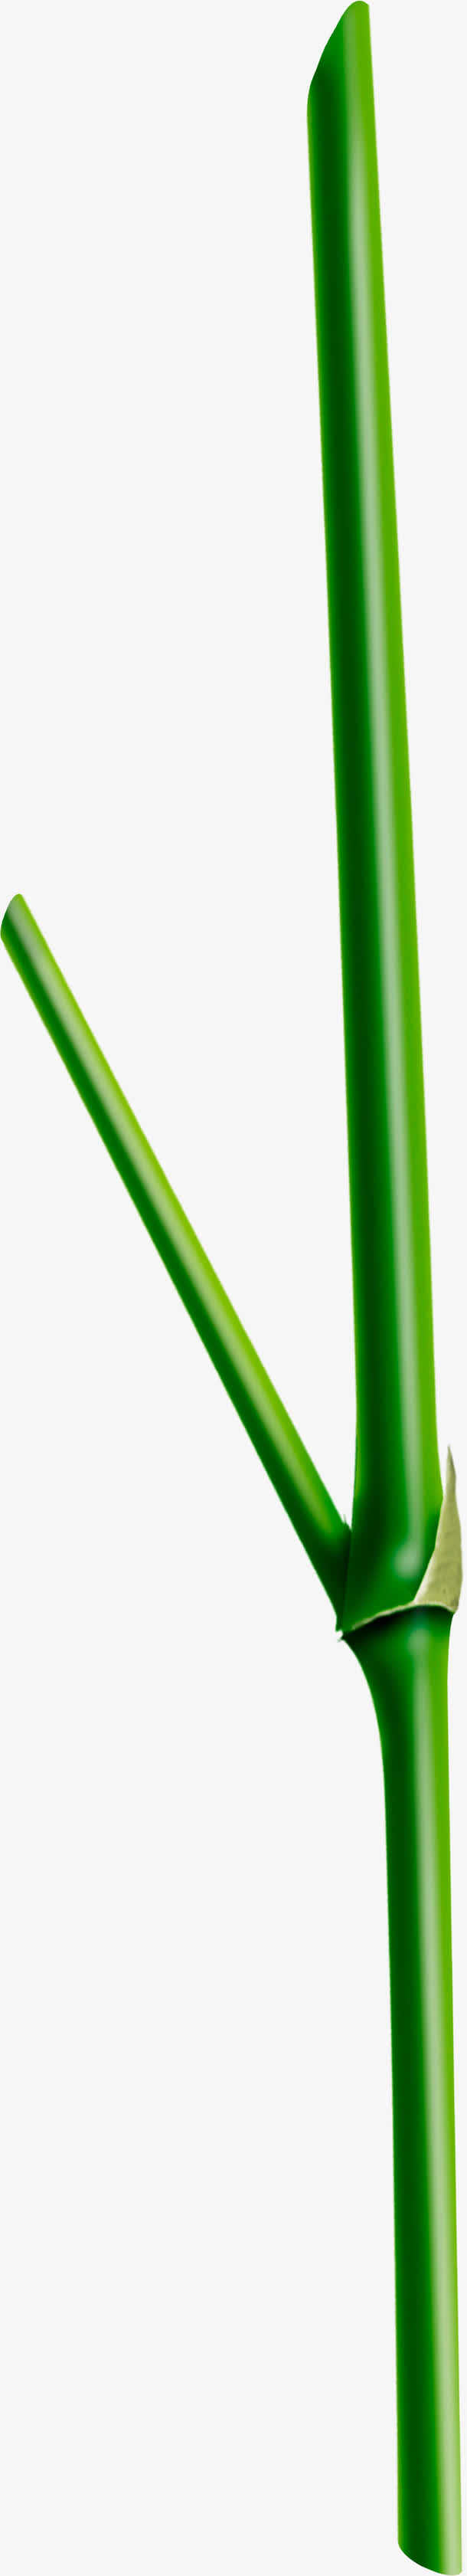 立体翠绿竹筒